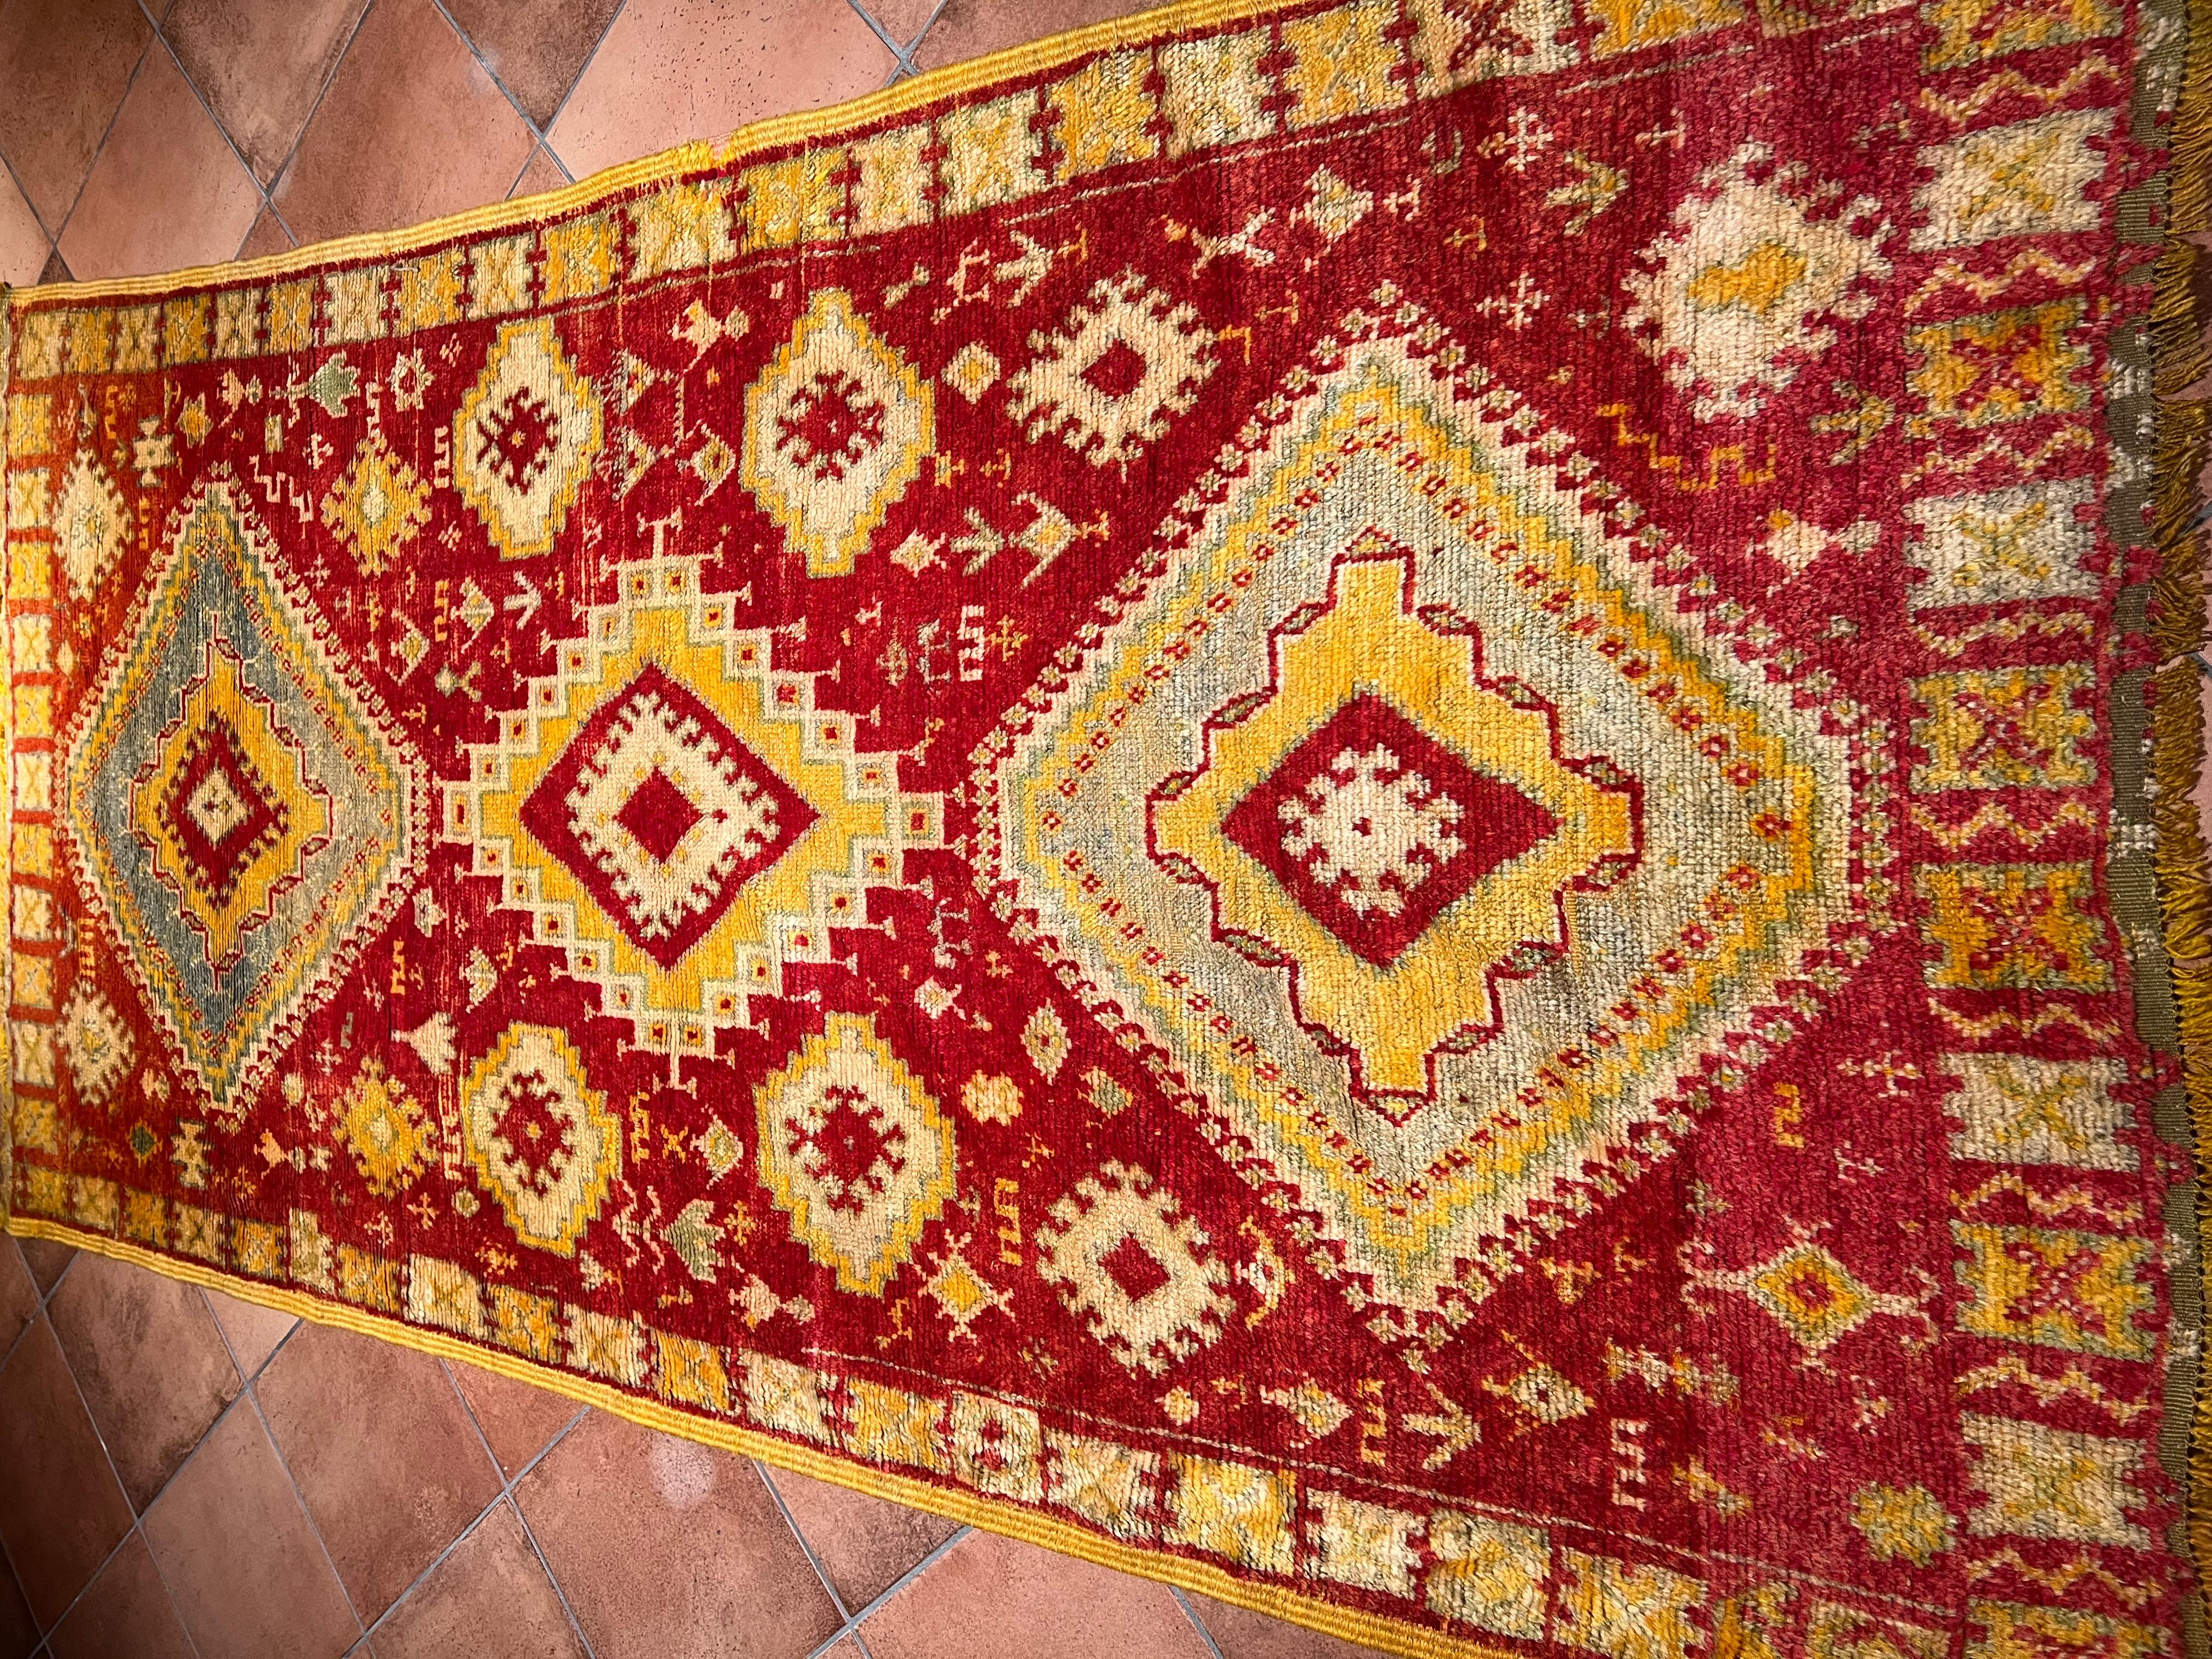 Les motifs géométriques des tapis berbères constituent un véritable langage codé, transmis de mère en fille, racontant l'histoire secrète de la femme qui les a tissés dans le foyer domestique. Les tapis se caractérisent par des losanges, des